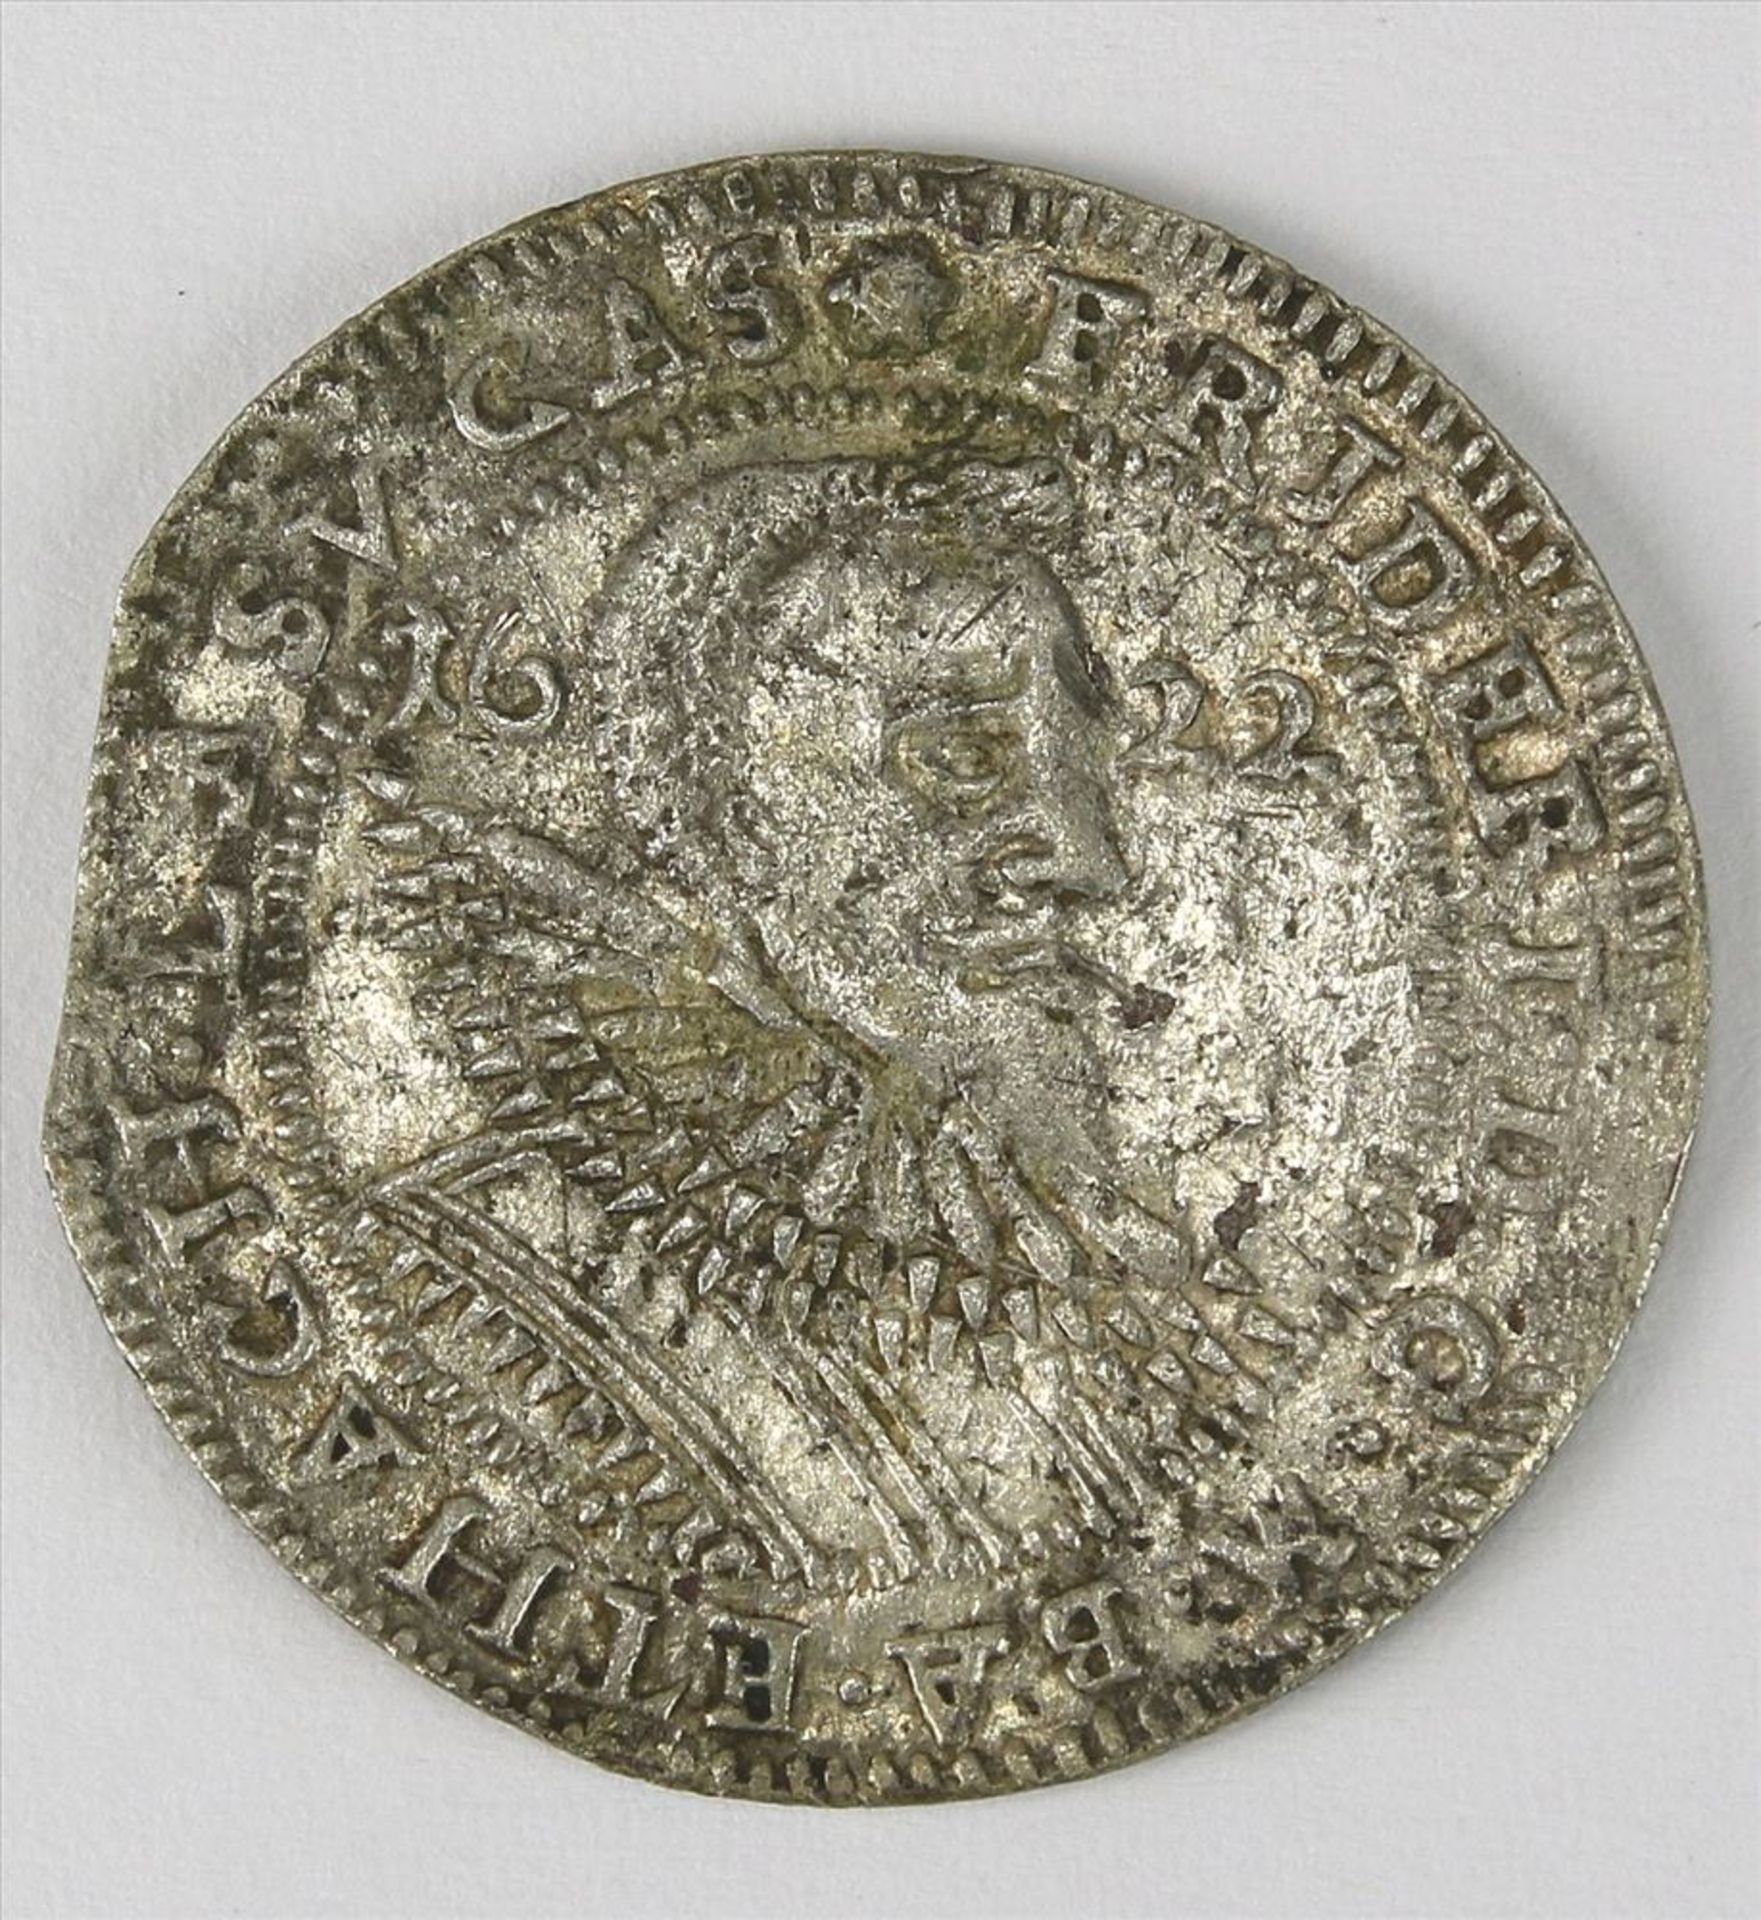 24 Kreuzer Stück Friedrich V, Baden 1622. Durchmesser ca. 29 - 29,6 mm, Gewicht ca. 4,1 Gramm. Für